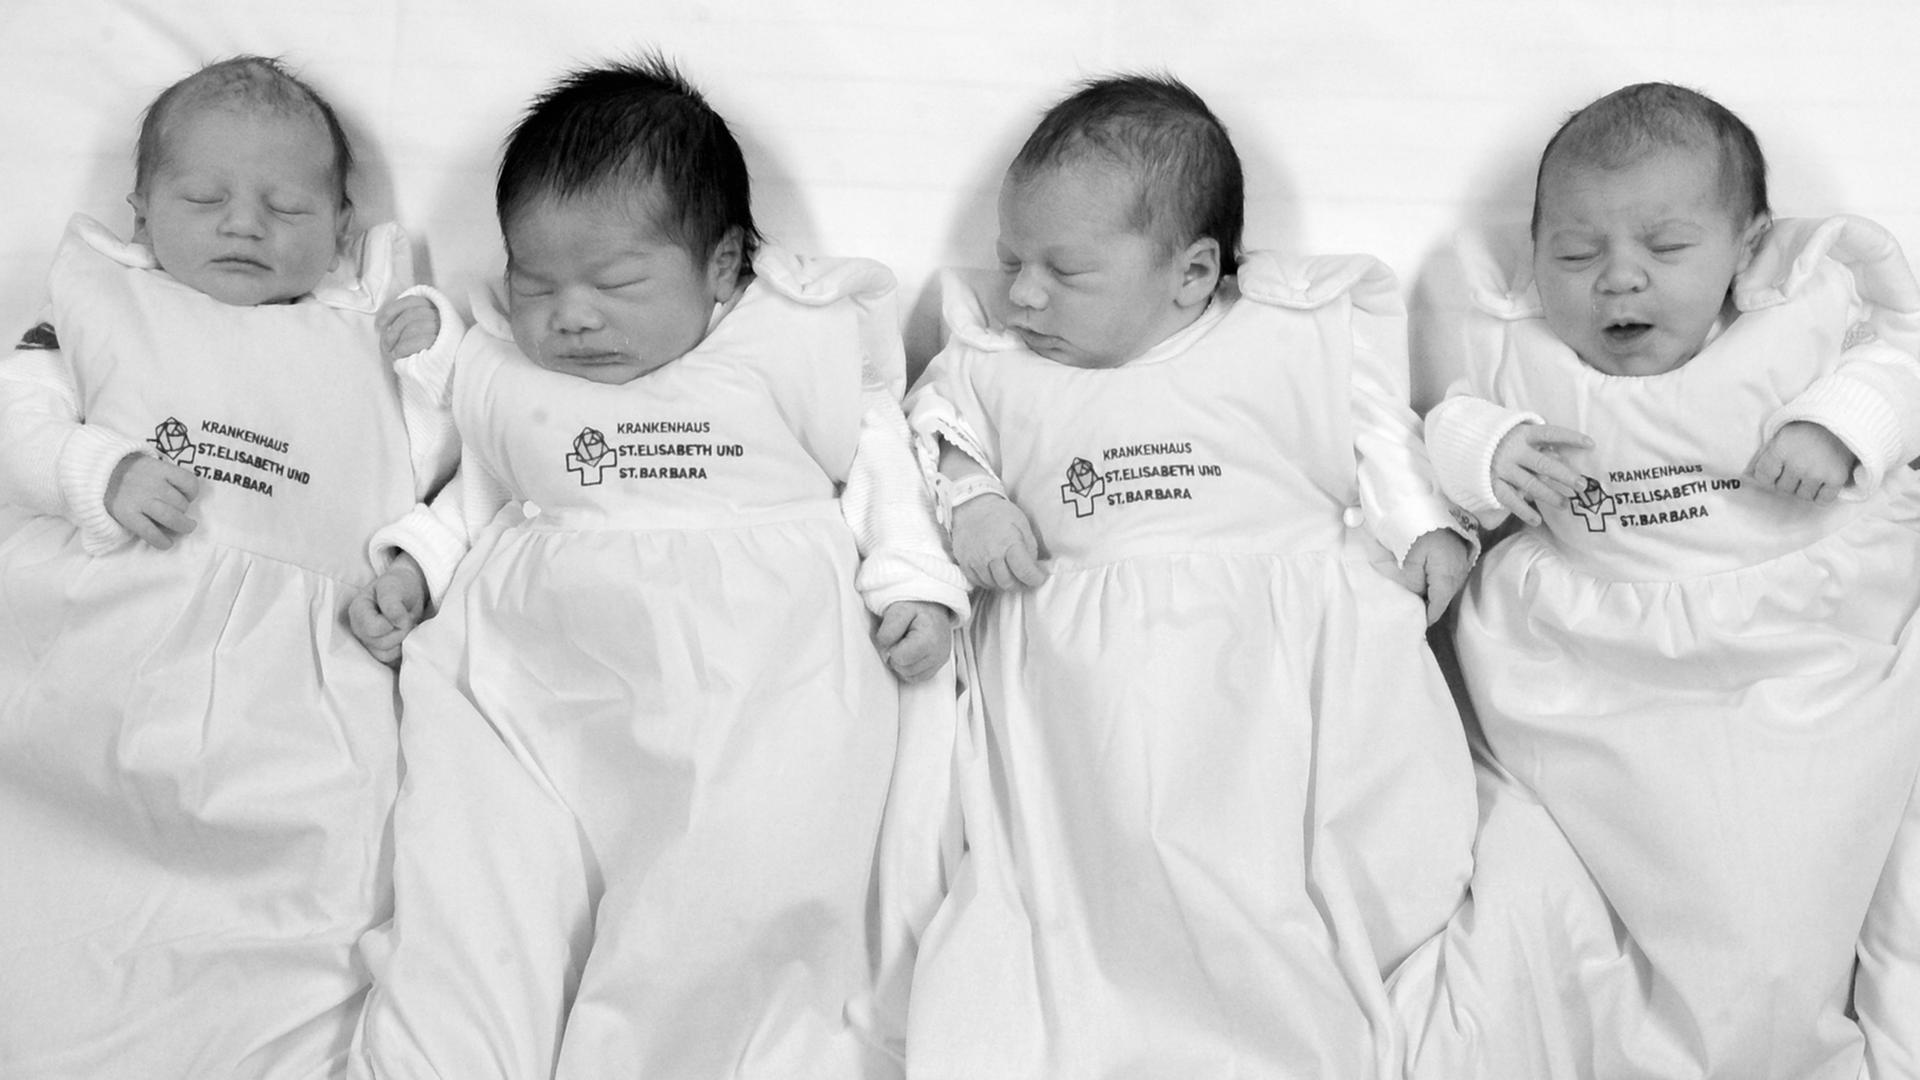 Auf der Neugeborenenstation im Krankenhaus St. Elisabeth und St. Barbara in Halle liegen wenige Stunden alten Neugeborene, aufgenommen am 05.01.2011.